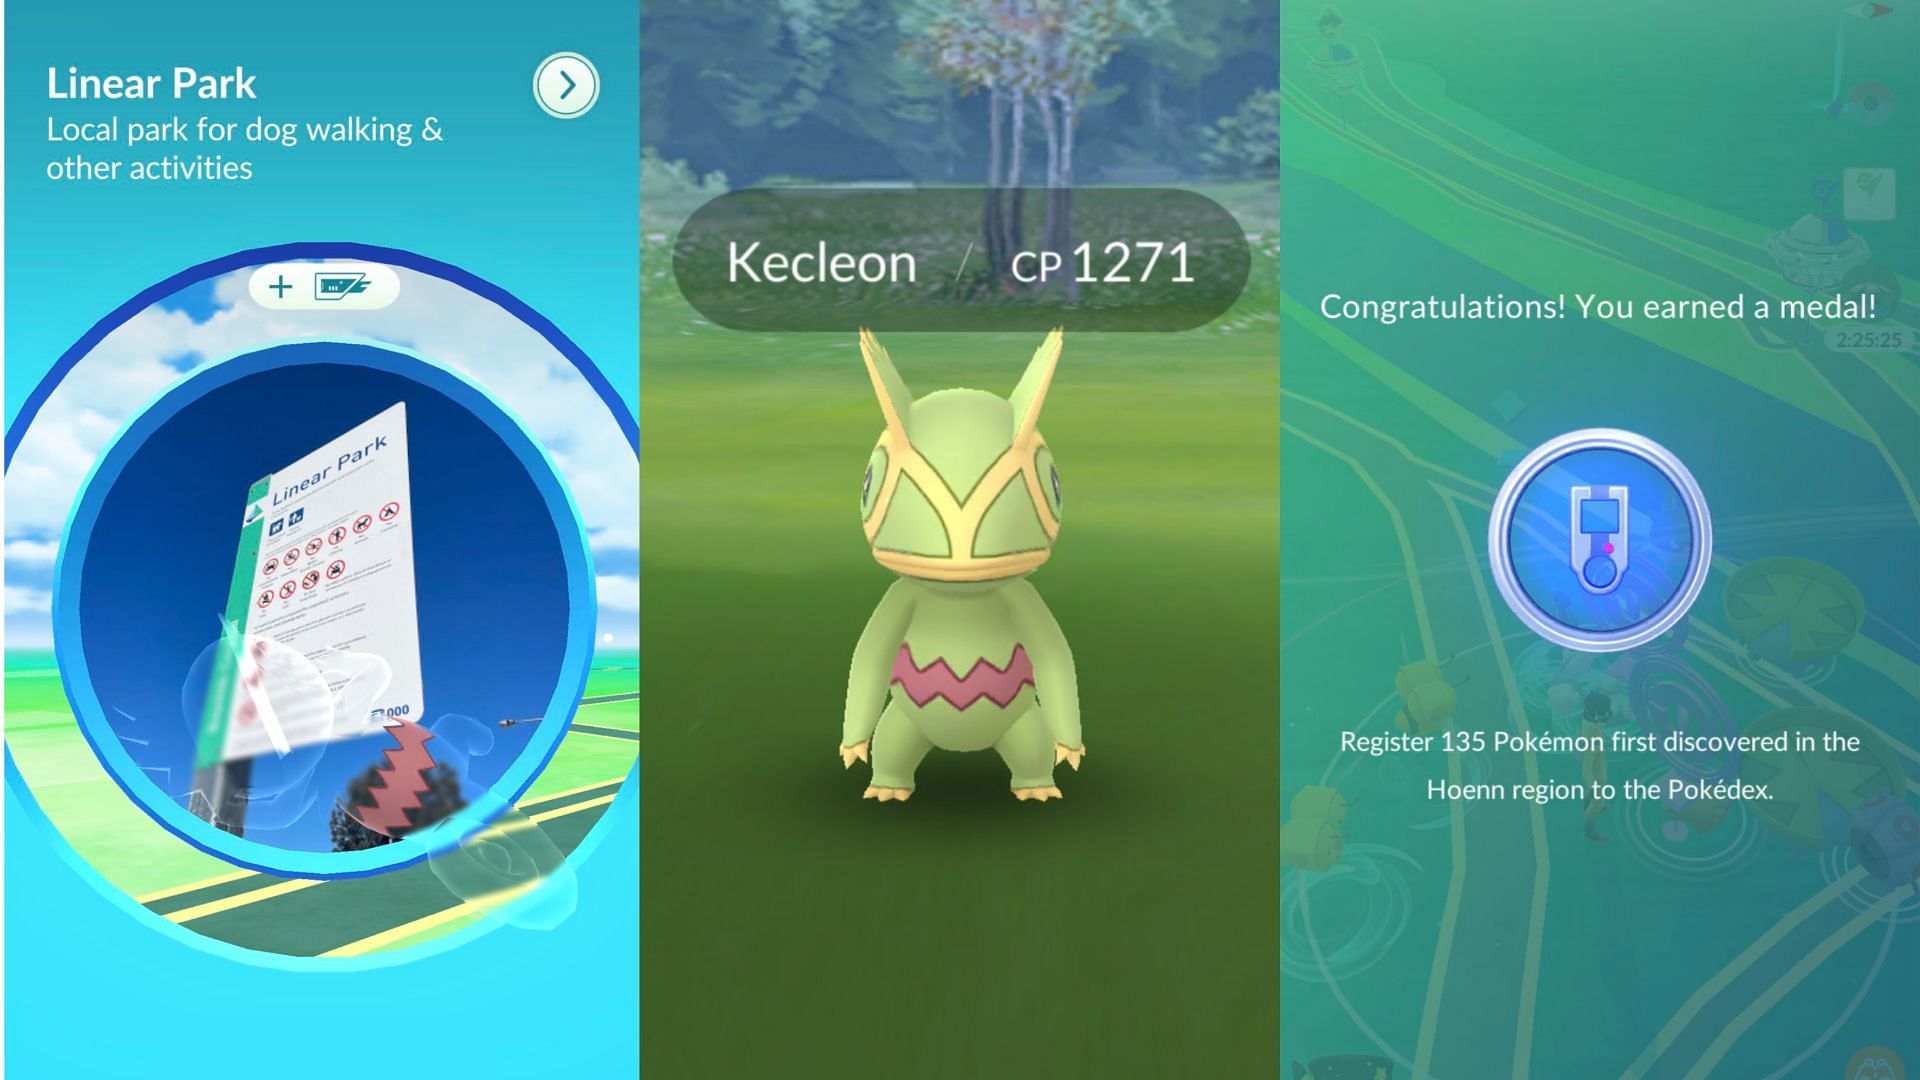 Menjelajahi daya tarik komunitas Pokemon GO dengan Kecleon setelah debut Pokemon Hoenn yang dilaporkan